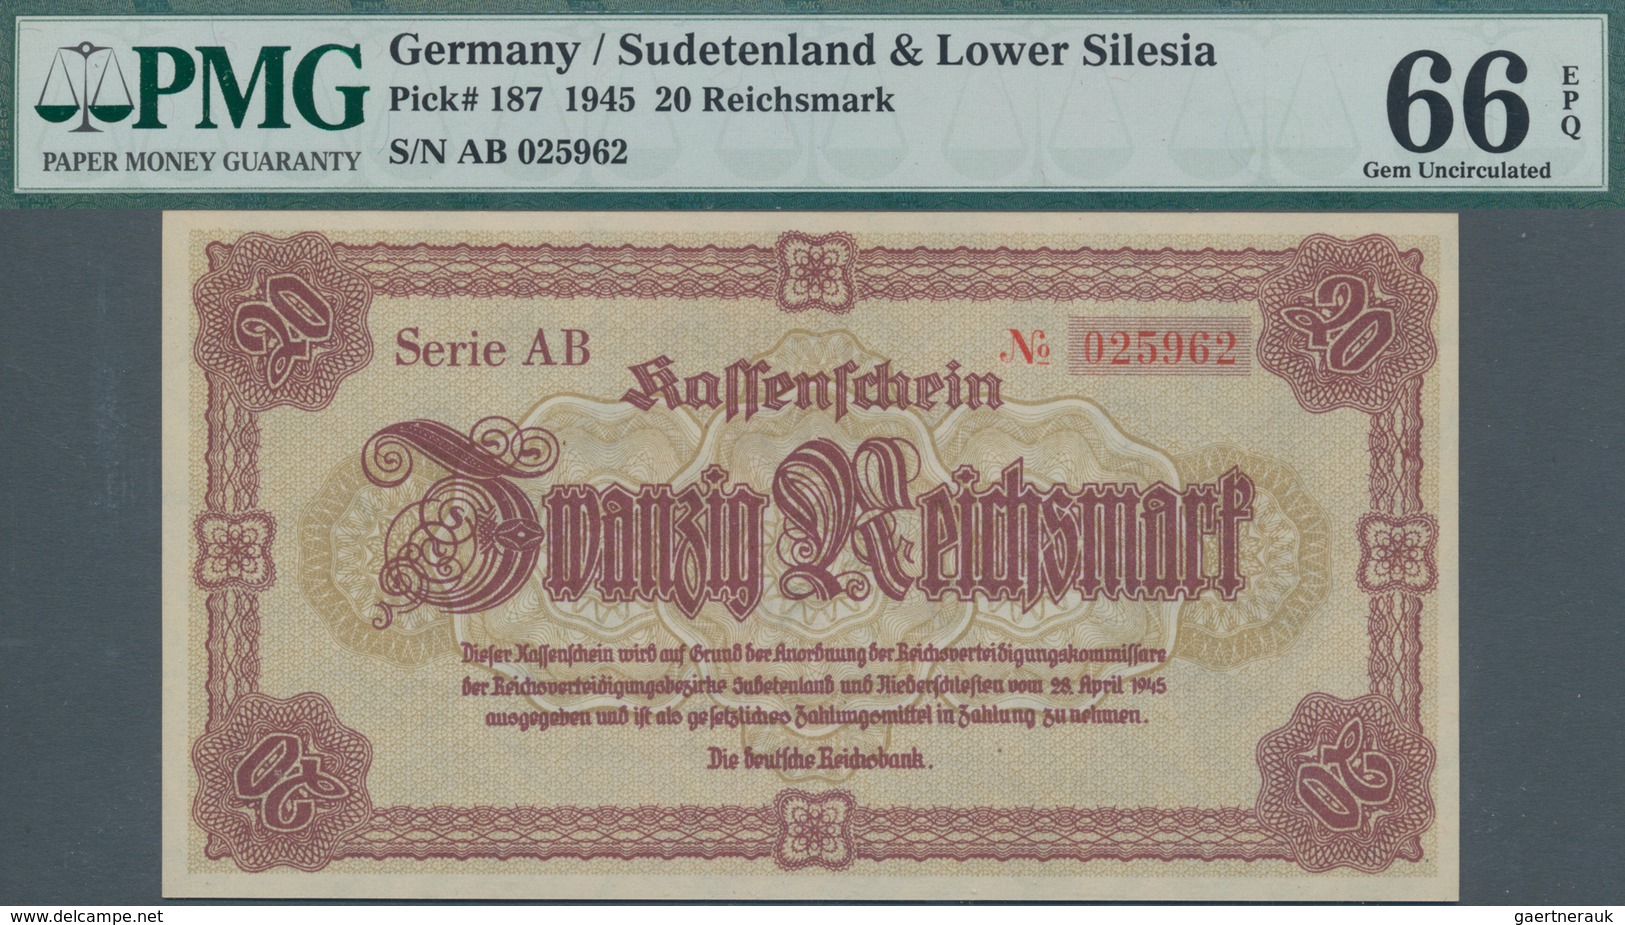 Deutschland - Deutsches Reich bis 1945: Lot mit 4 Banknoten 20 Reichsmark 1945, Ro.186, alle PMG gep